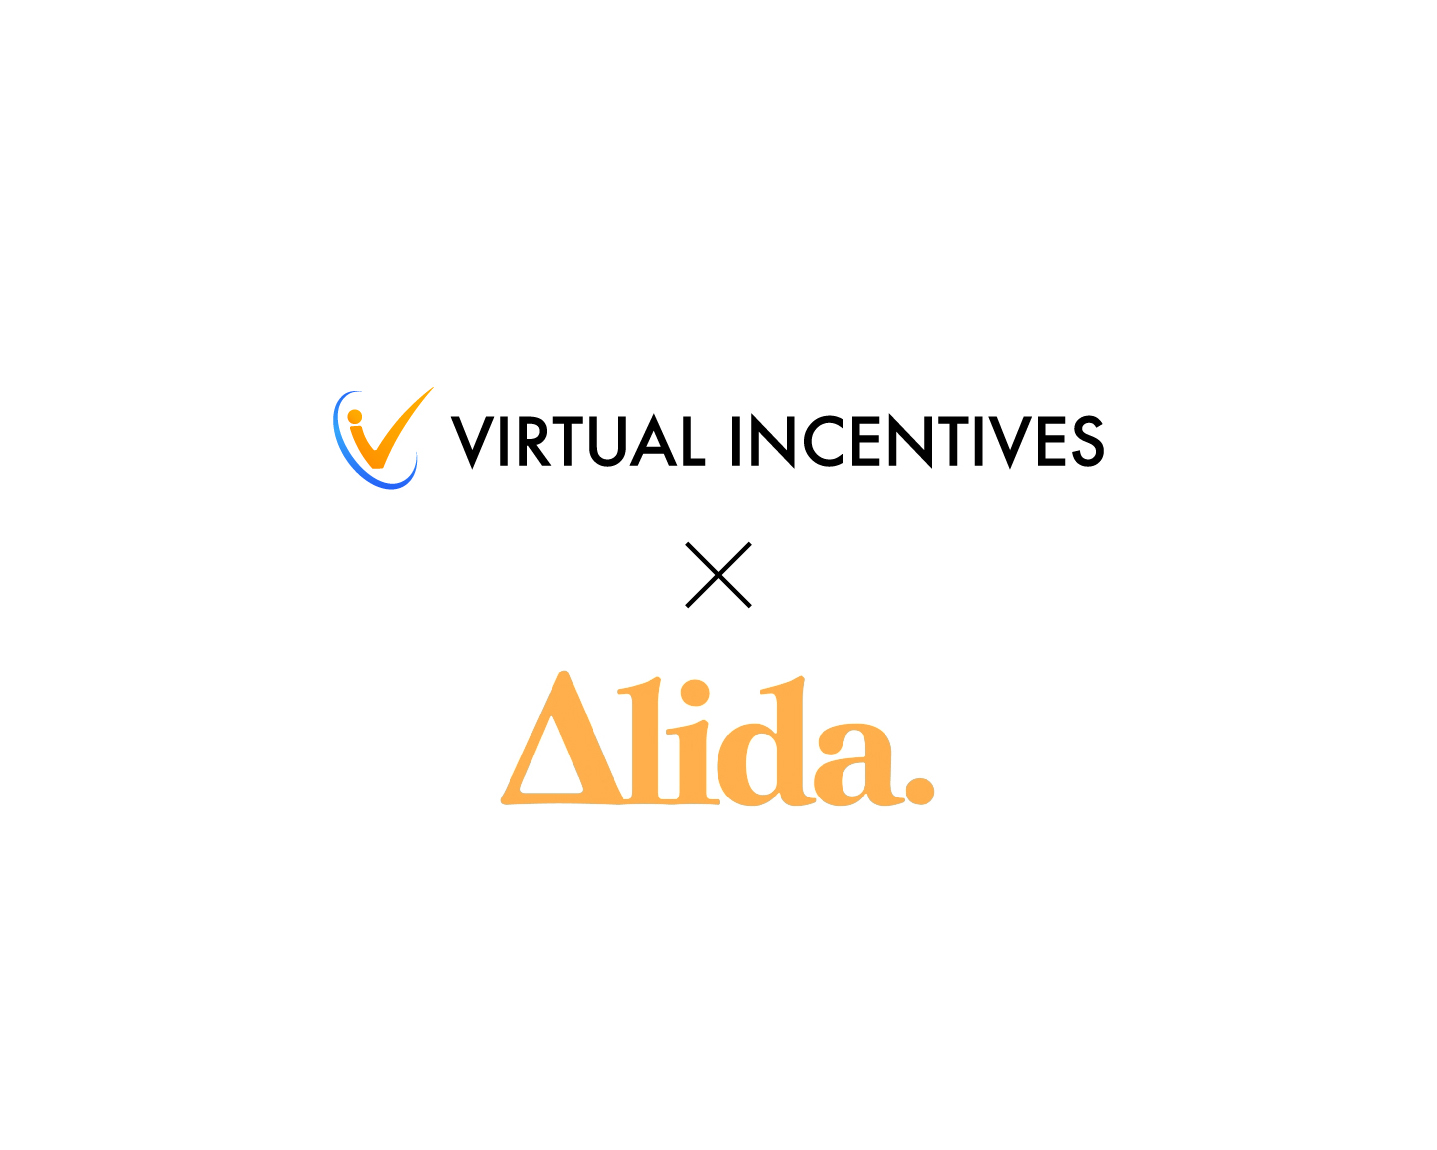 virtual incentives and alida logos